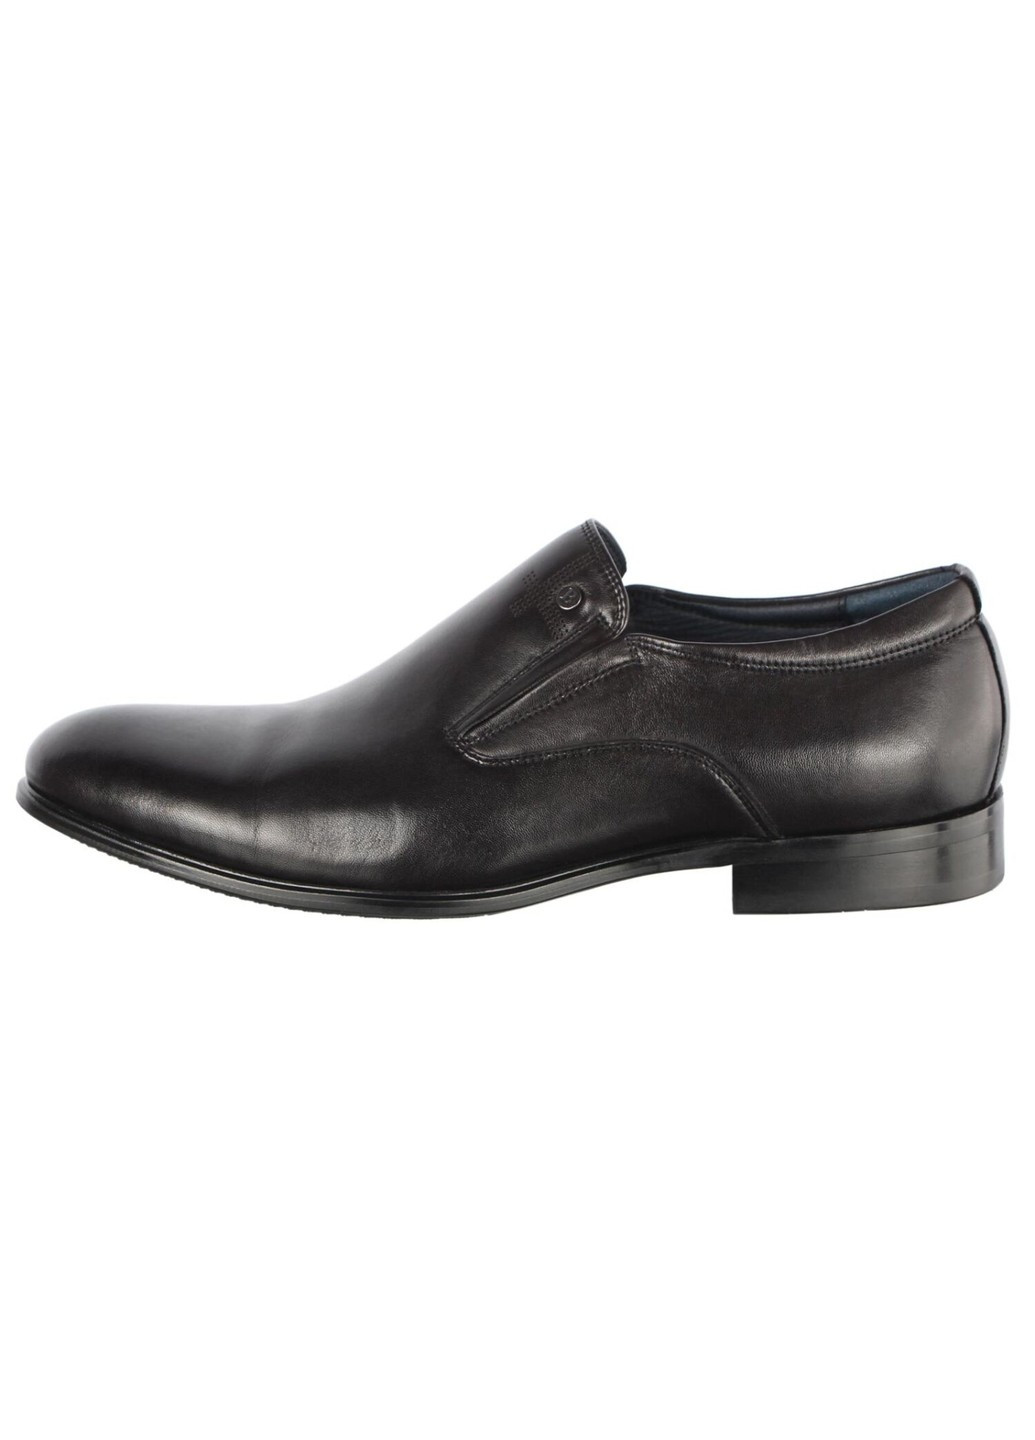 Черные мужские классические туфли 196401 Buts без шнурков